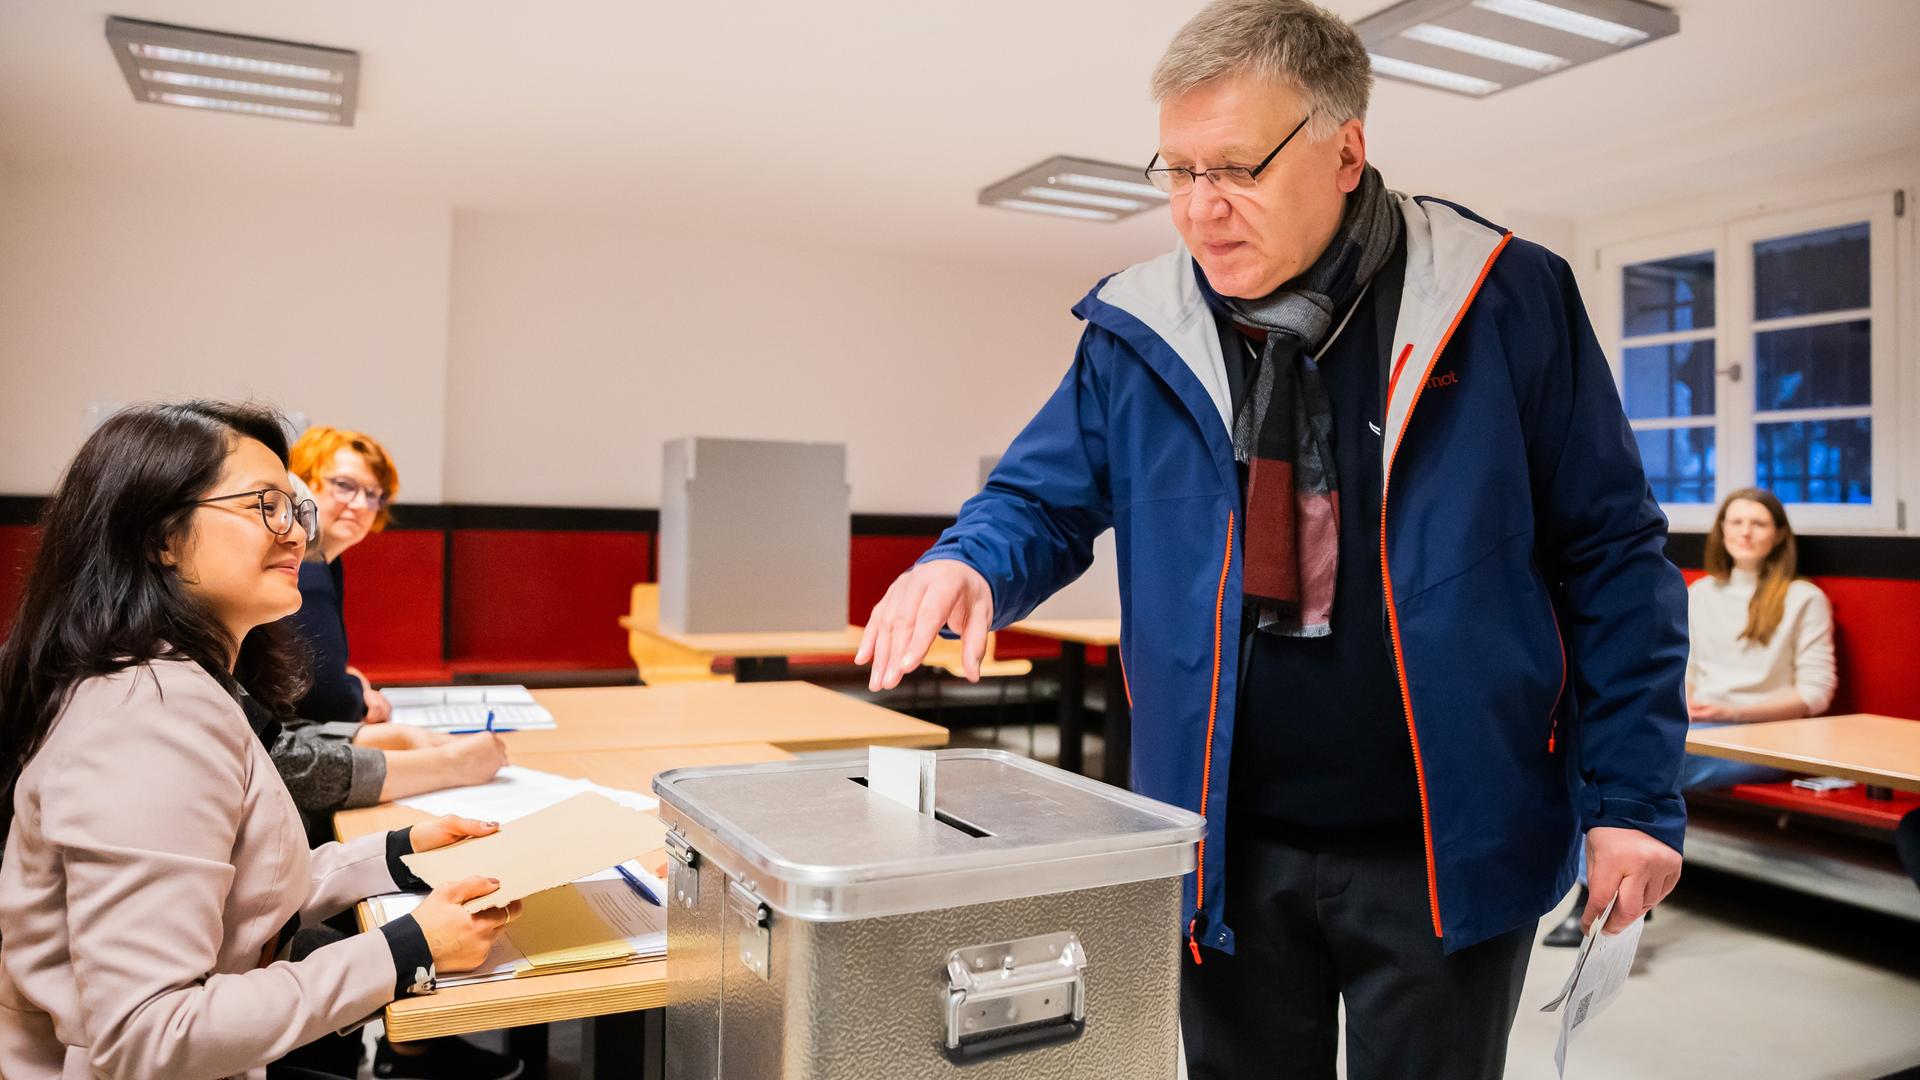 Stephan Bröchler (r), Landeswahlleiter für Berlin, wirft seinen Stimmzettel in eine Wahlurne.